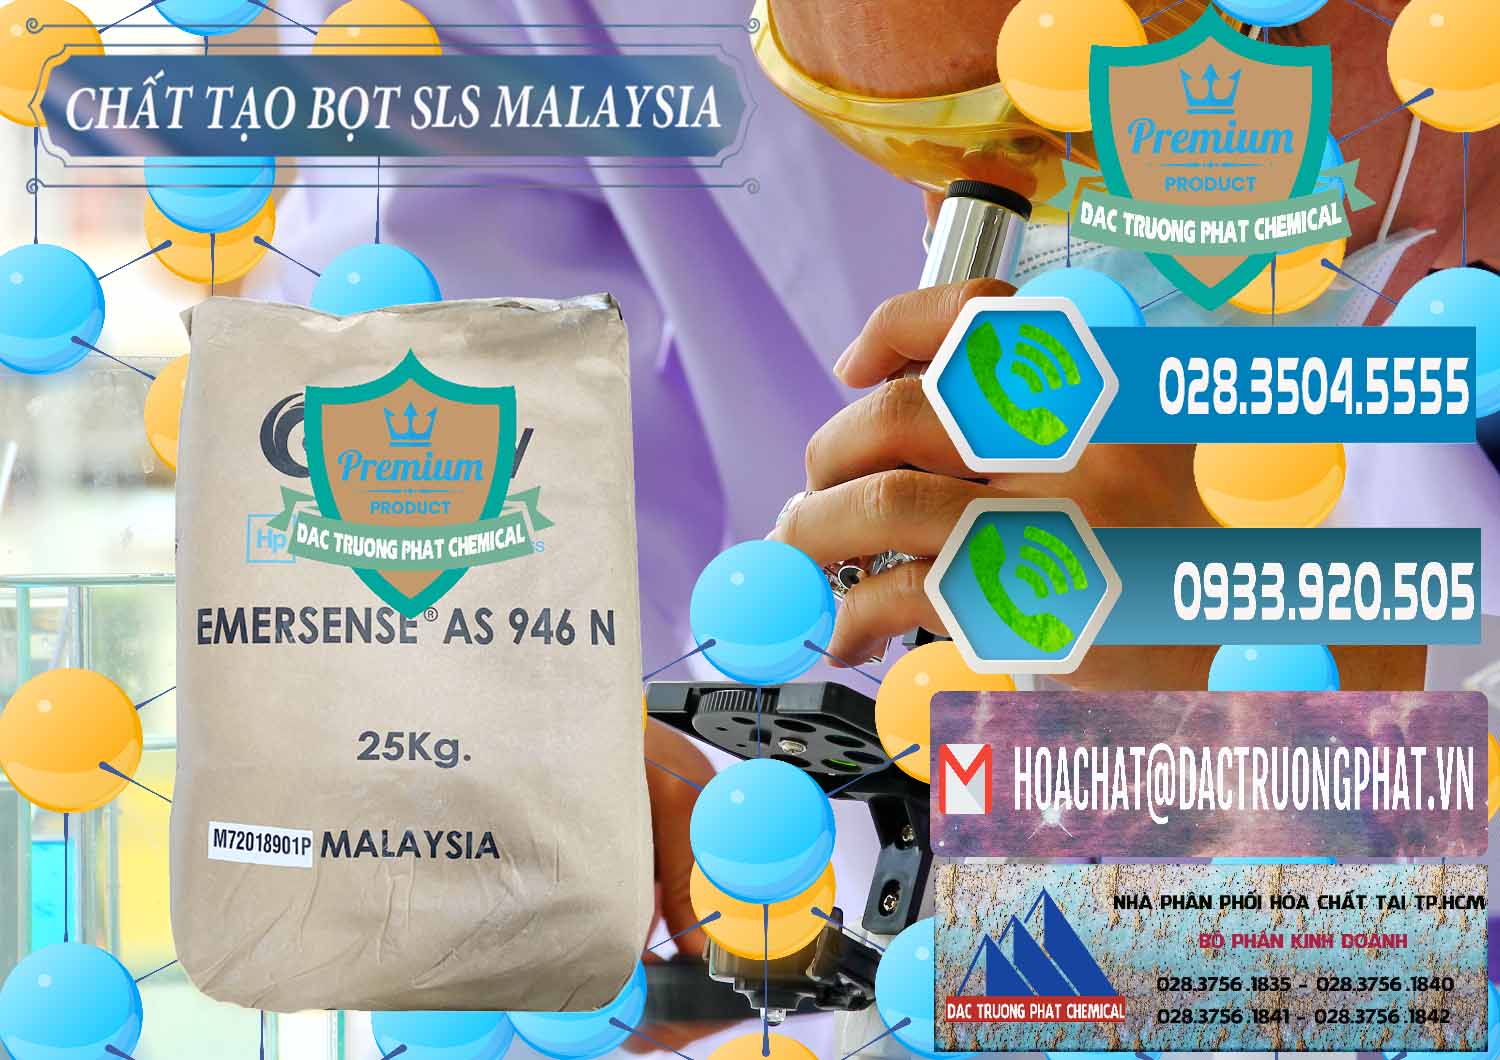 Cty kinh doanh và bán Chất Tạo Bọt SLS Emery - Emersense AS 946N Mã Lai Malaysia - 0423 - Cty chuyên nhập khẩu _ cung cấp hóa chất tại TP.HCM - congtyhoachat.net